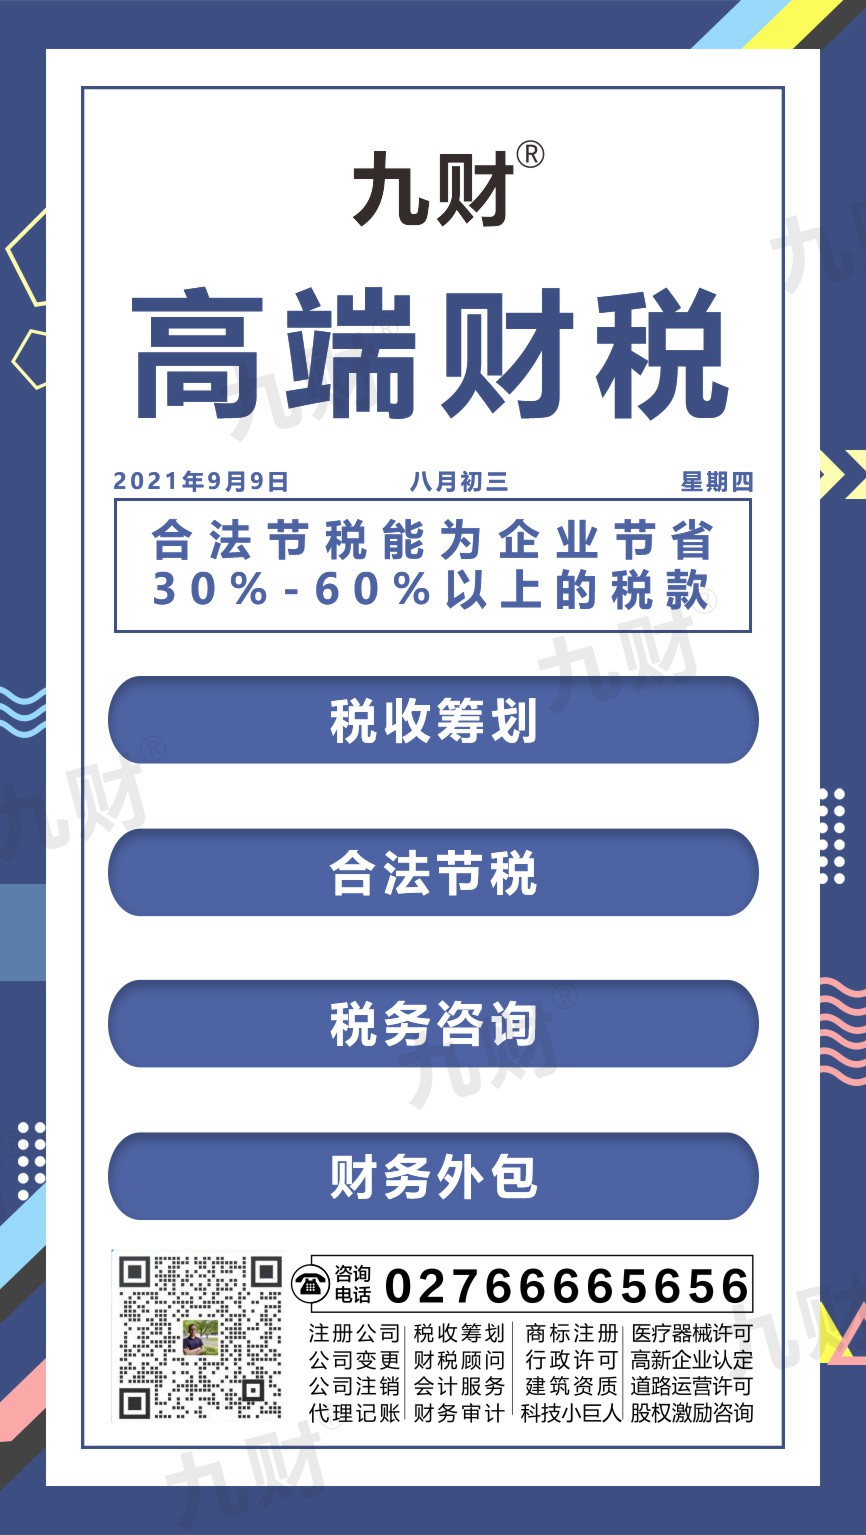 新洲区武汉东湖区股东变更网上如何填写资料申请